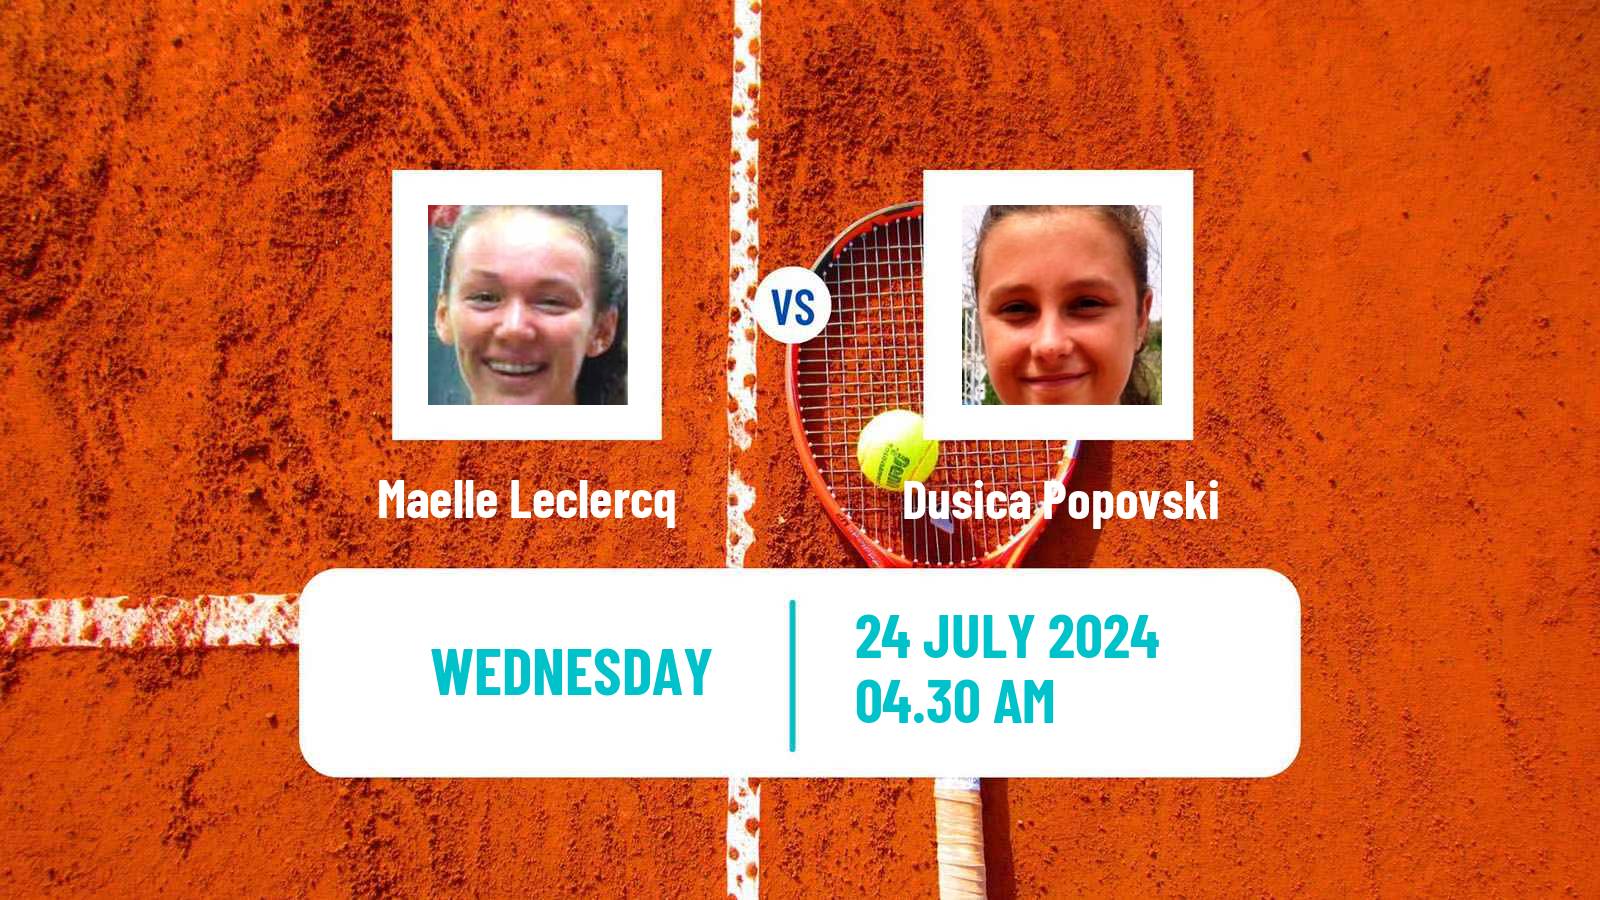 Tennis ITF W15 Kursumlijska Banja 13 Women Maelle Leclercq - Dusica Popovski